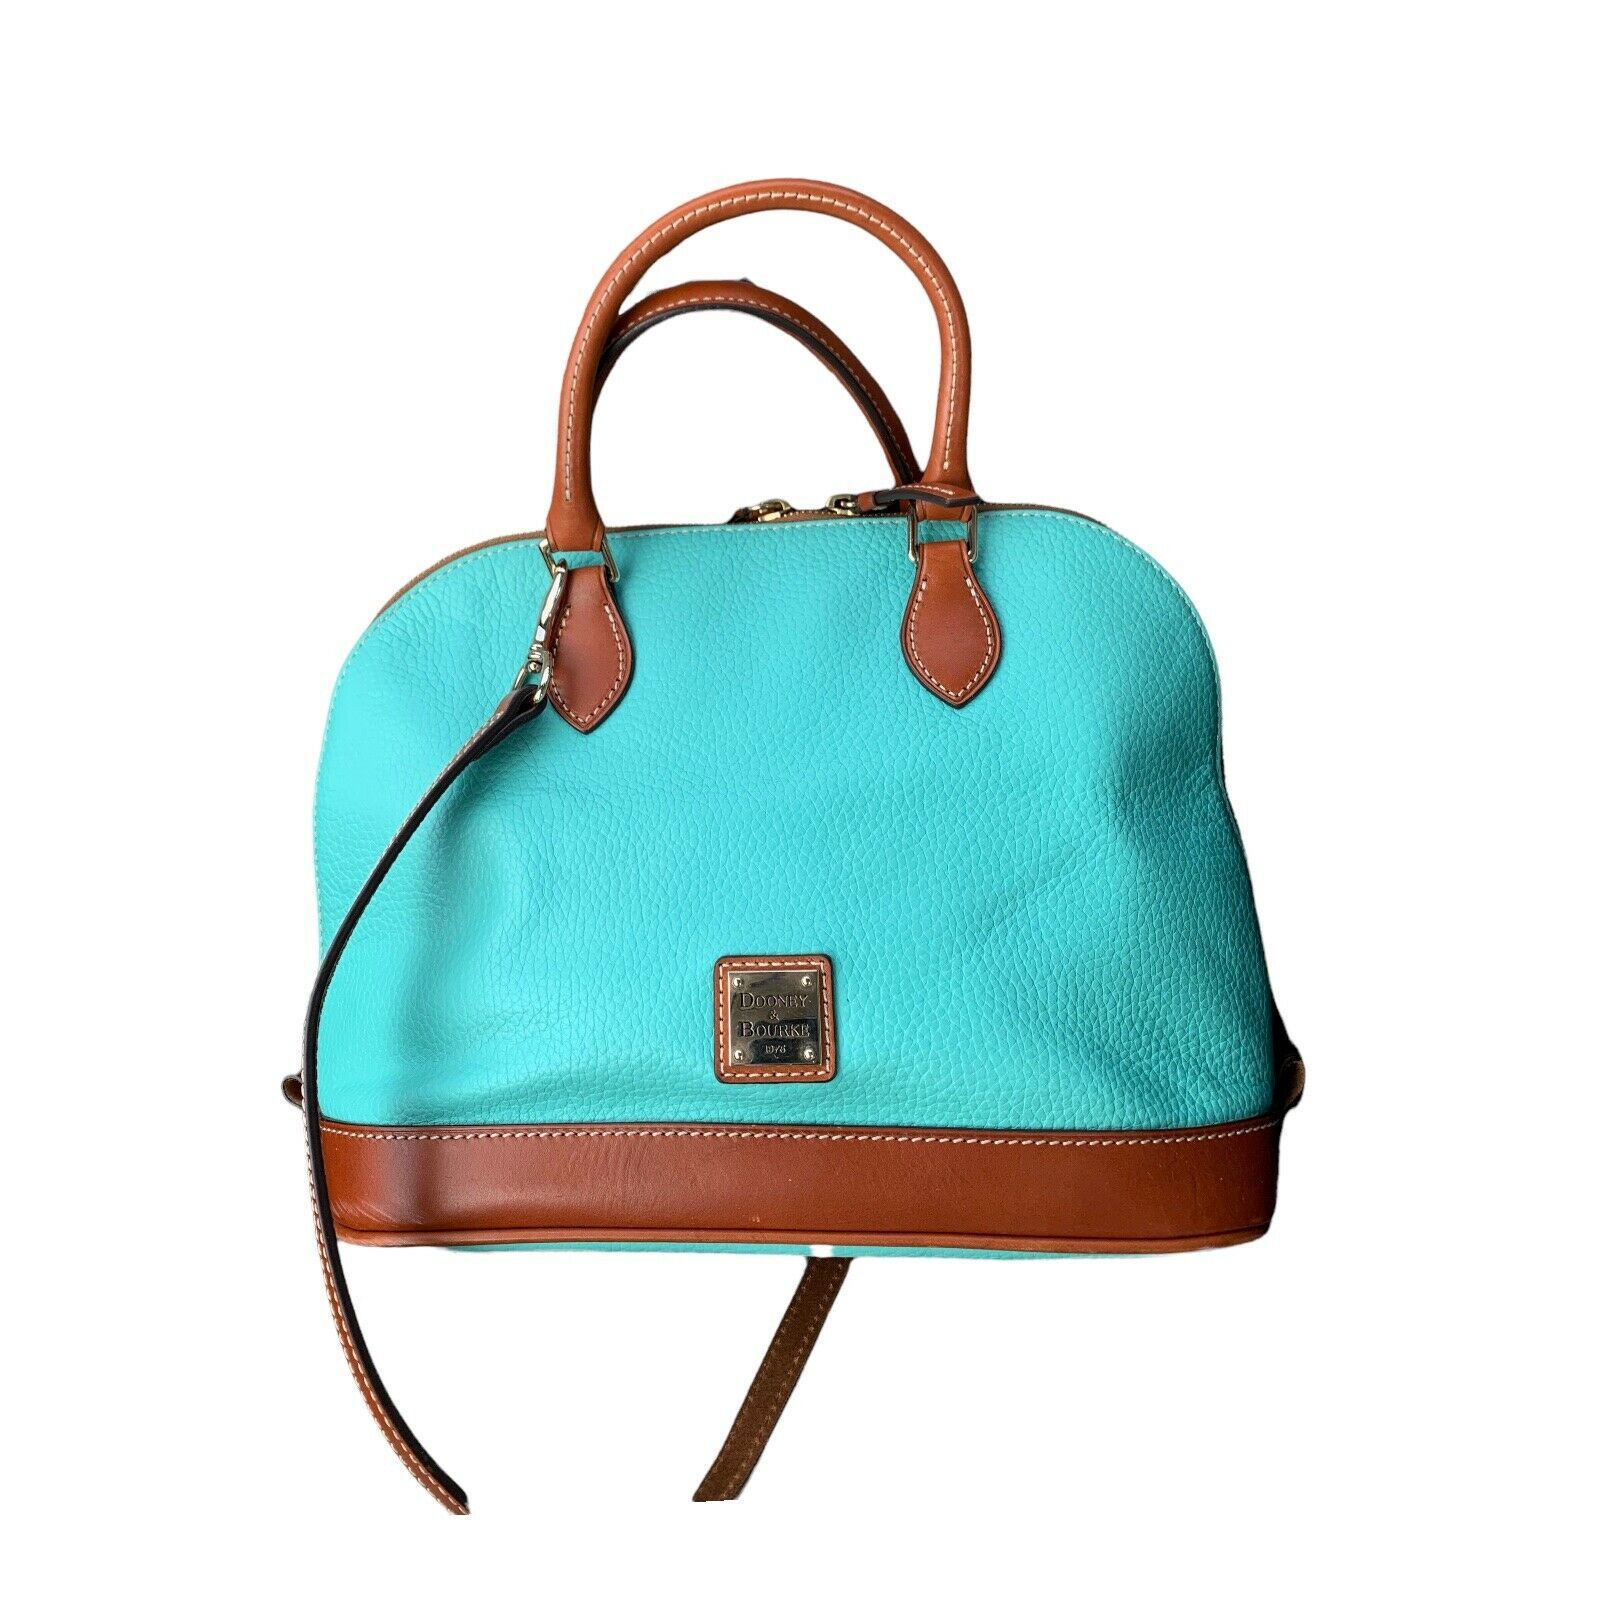 Primary image for Dooney & Bourke Zip Zip Satchel Bag Turquoise Color